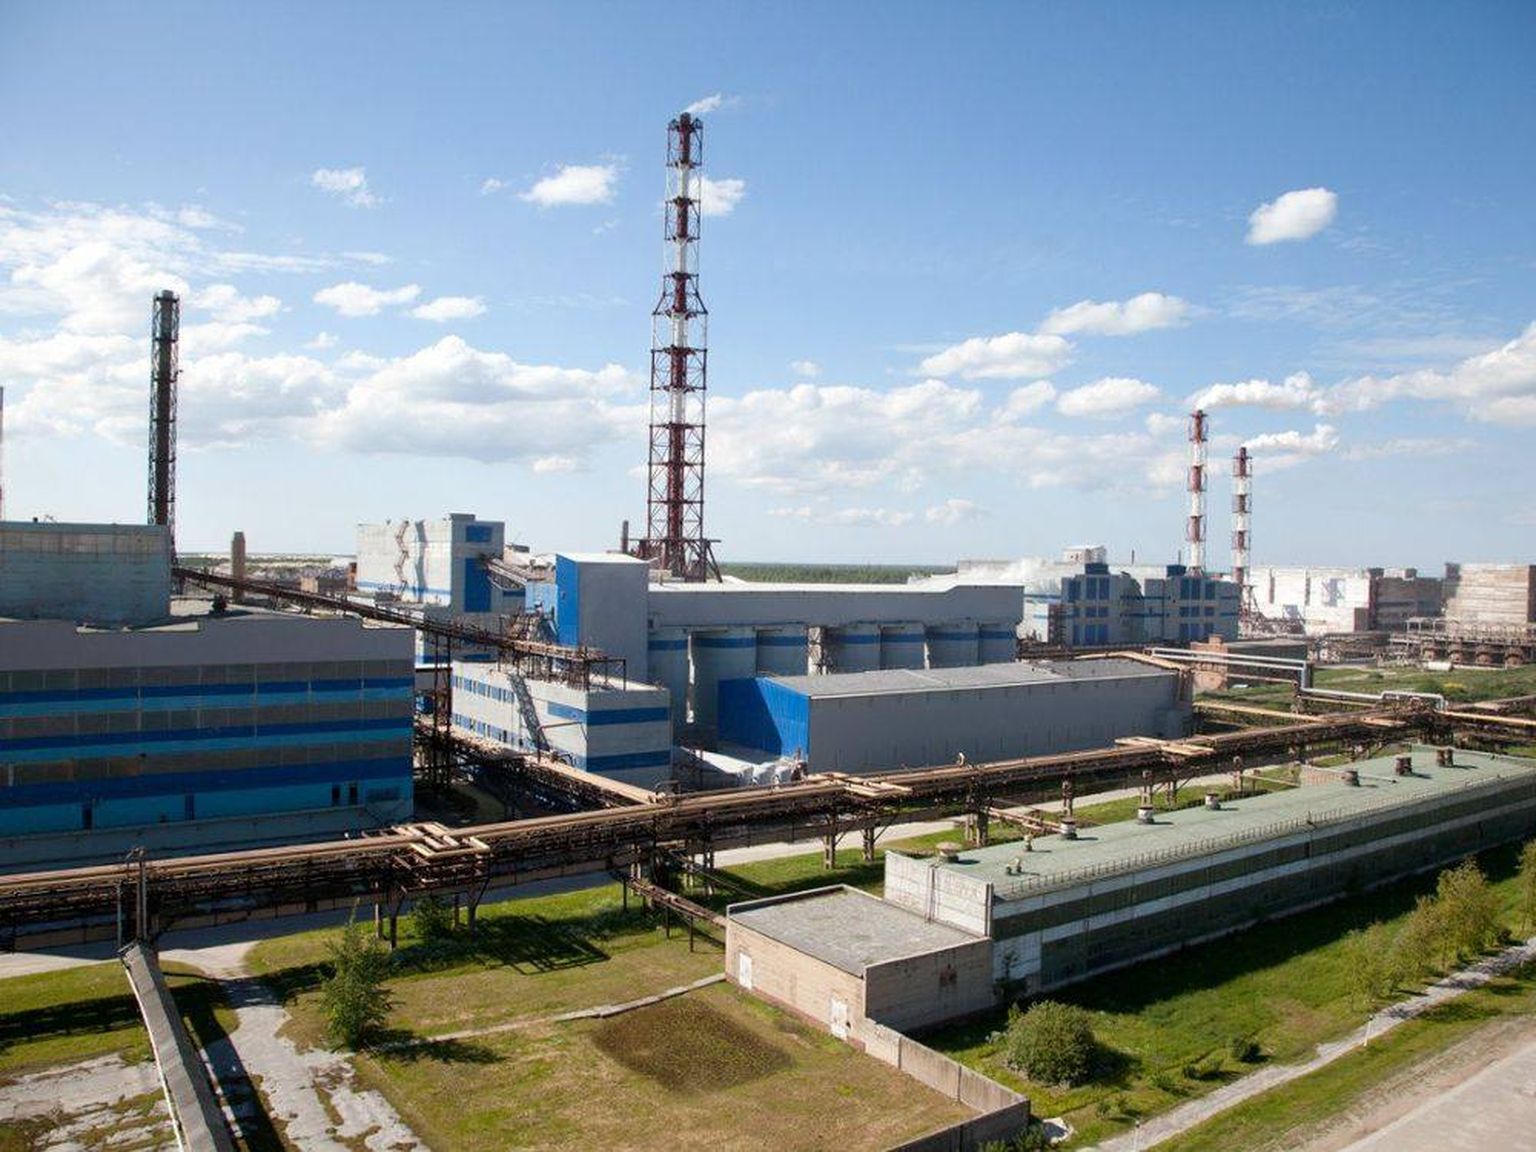 Промзона "Фосфорит" под Кингисеппом в последние годы активно развивается. В июне 2019 года здесь открылся крупнейший на европейском континенте завод по производству аммиака "ЕвроХим".